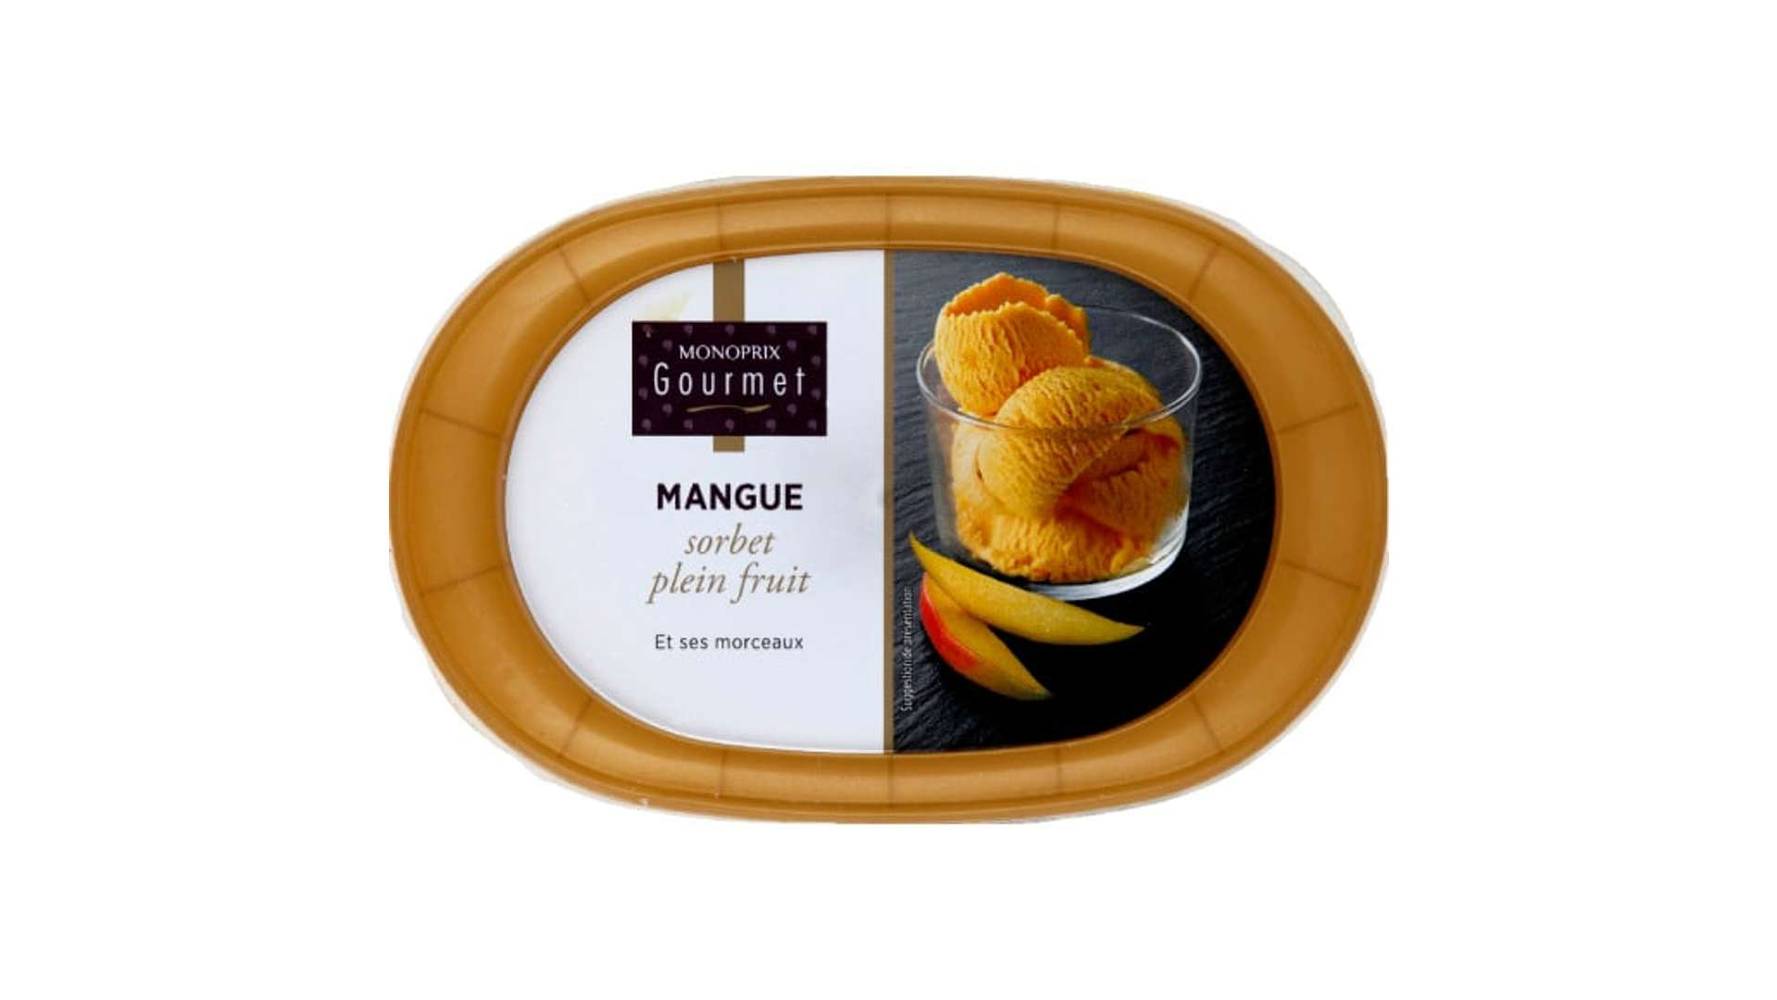 Monoprix Gourmet - Sorbet plein fruit et ses morceaux (mangue)